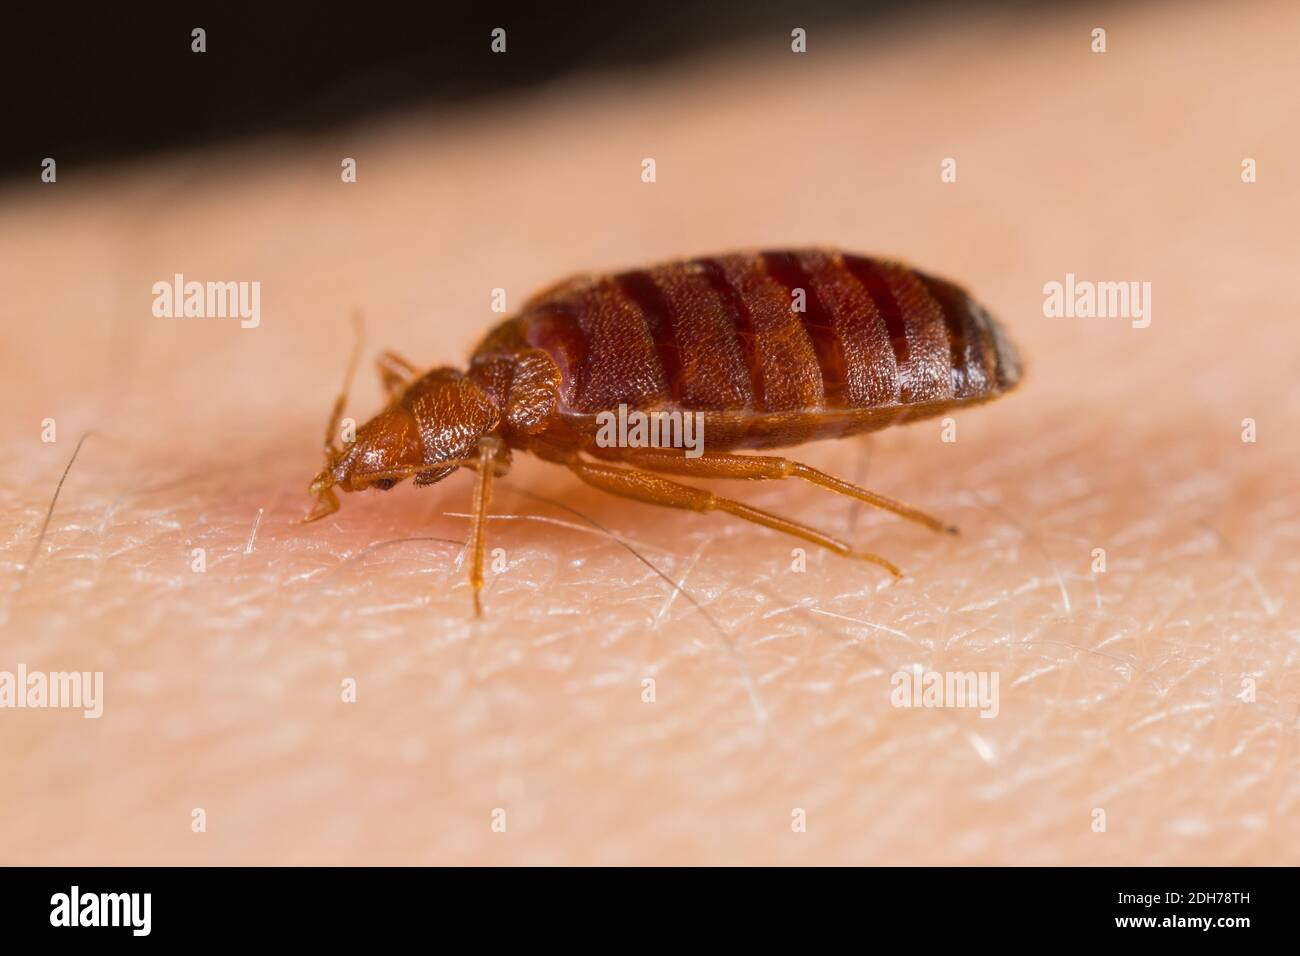 Insecte de lit commun (Cimex lectularius) se nourrissant sur un hôte humain Banque D'Images